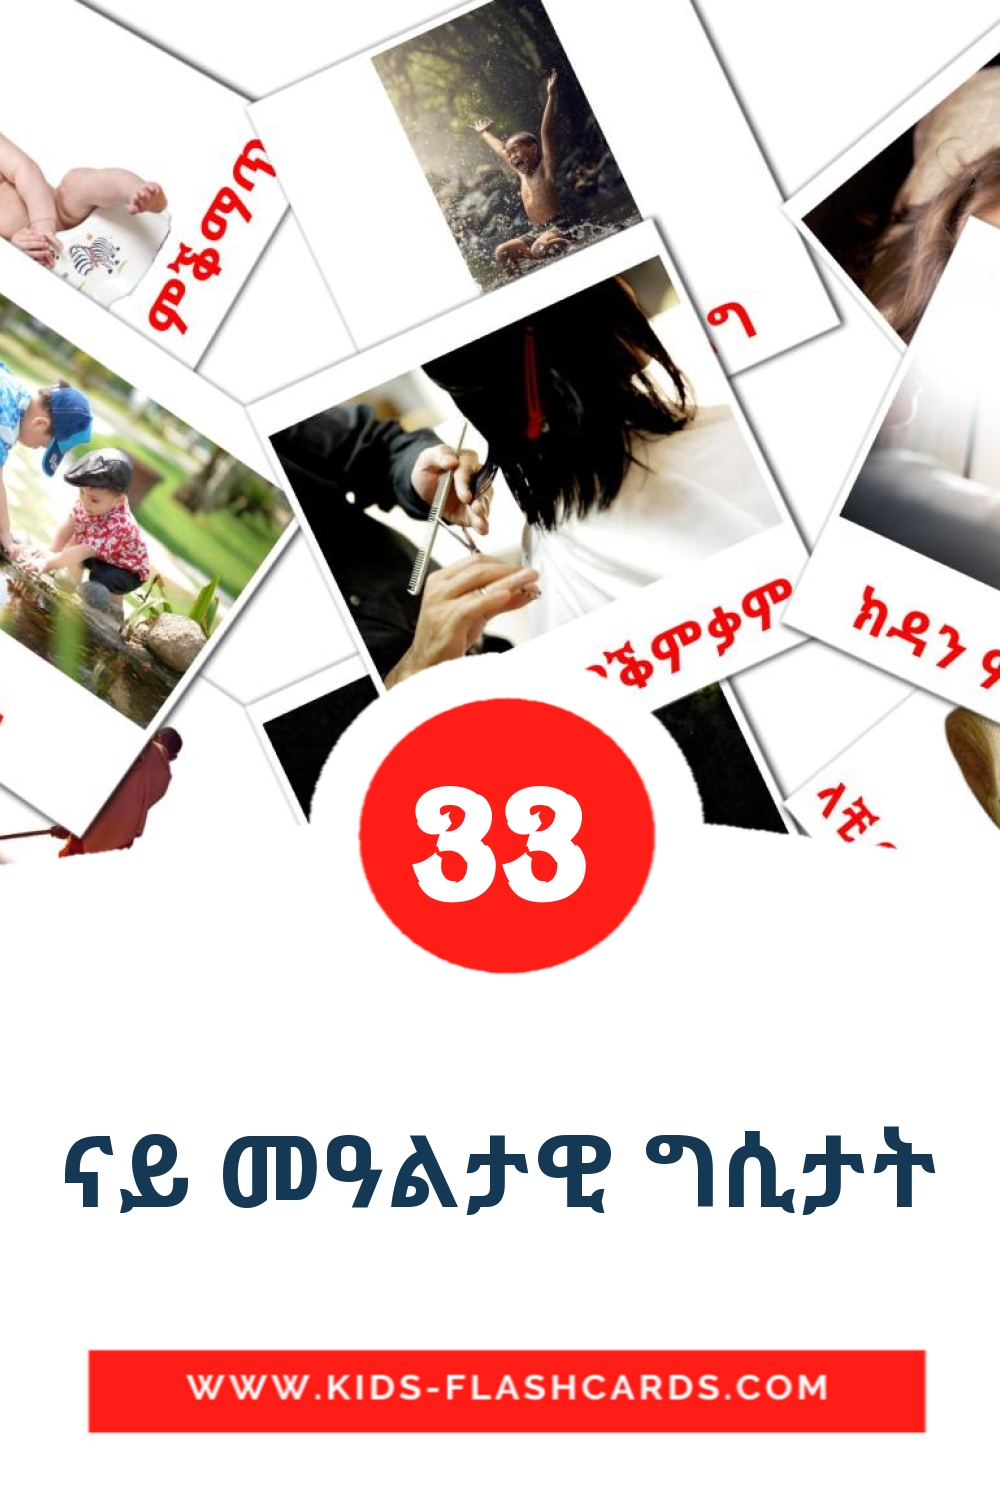 33 carte illustrate di ናይ መዓልታዊ ግሲታት per la scuola materna in tigrigna(Eritrea)